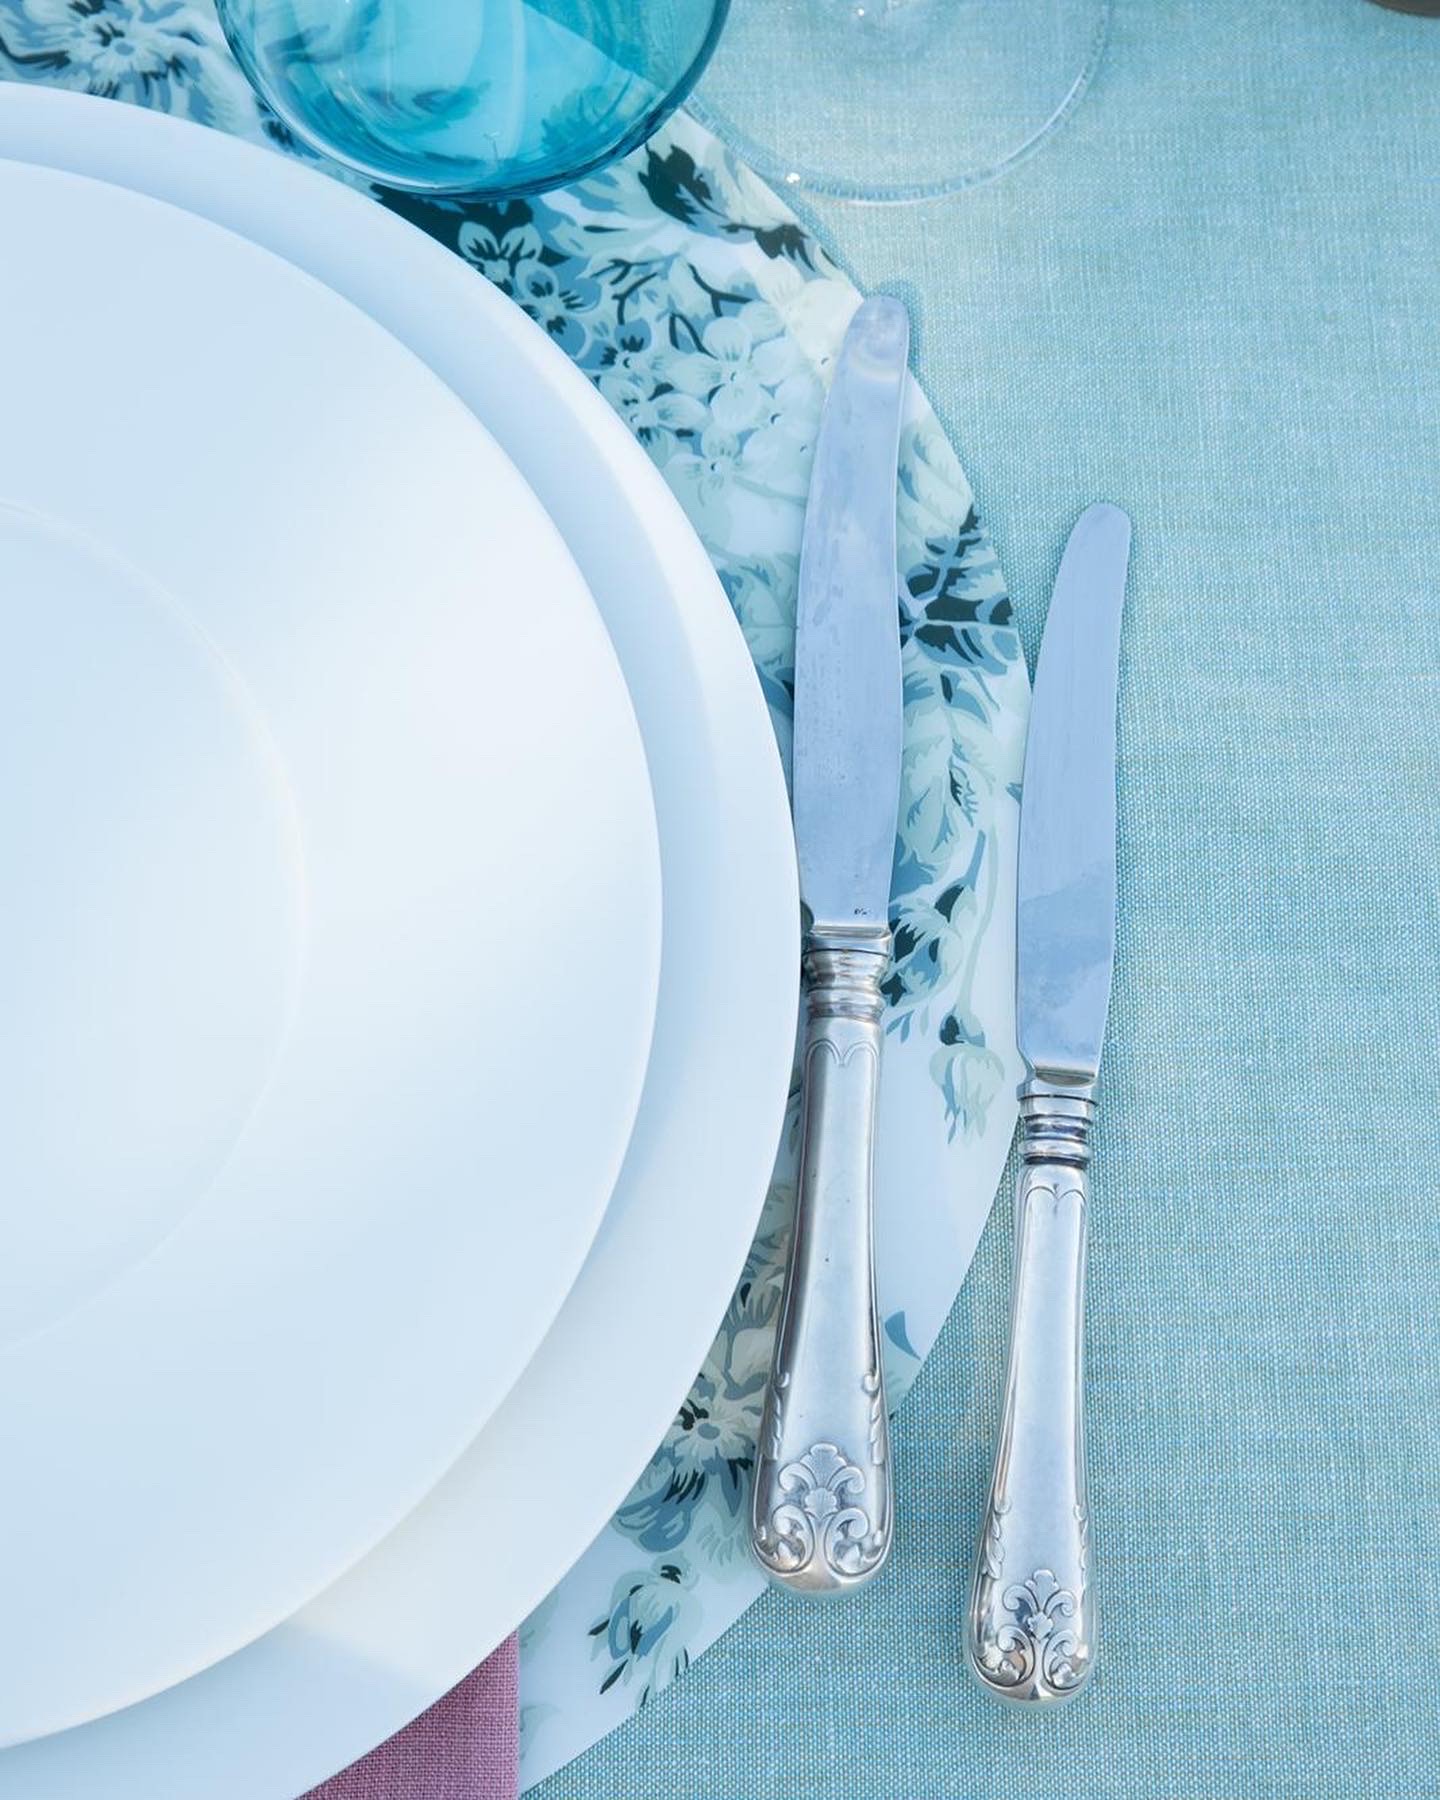 décoration table mariage bleu